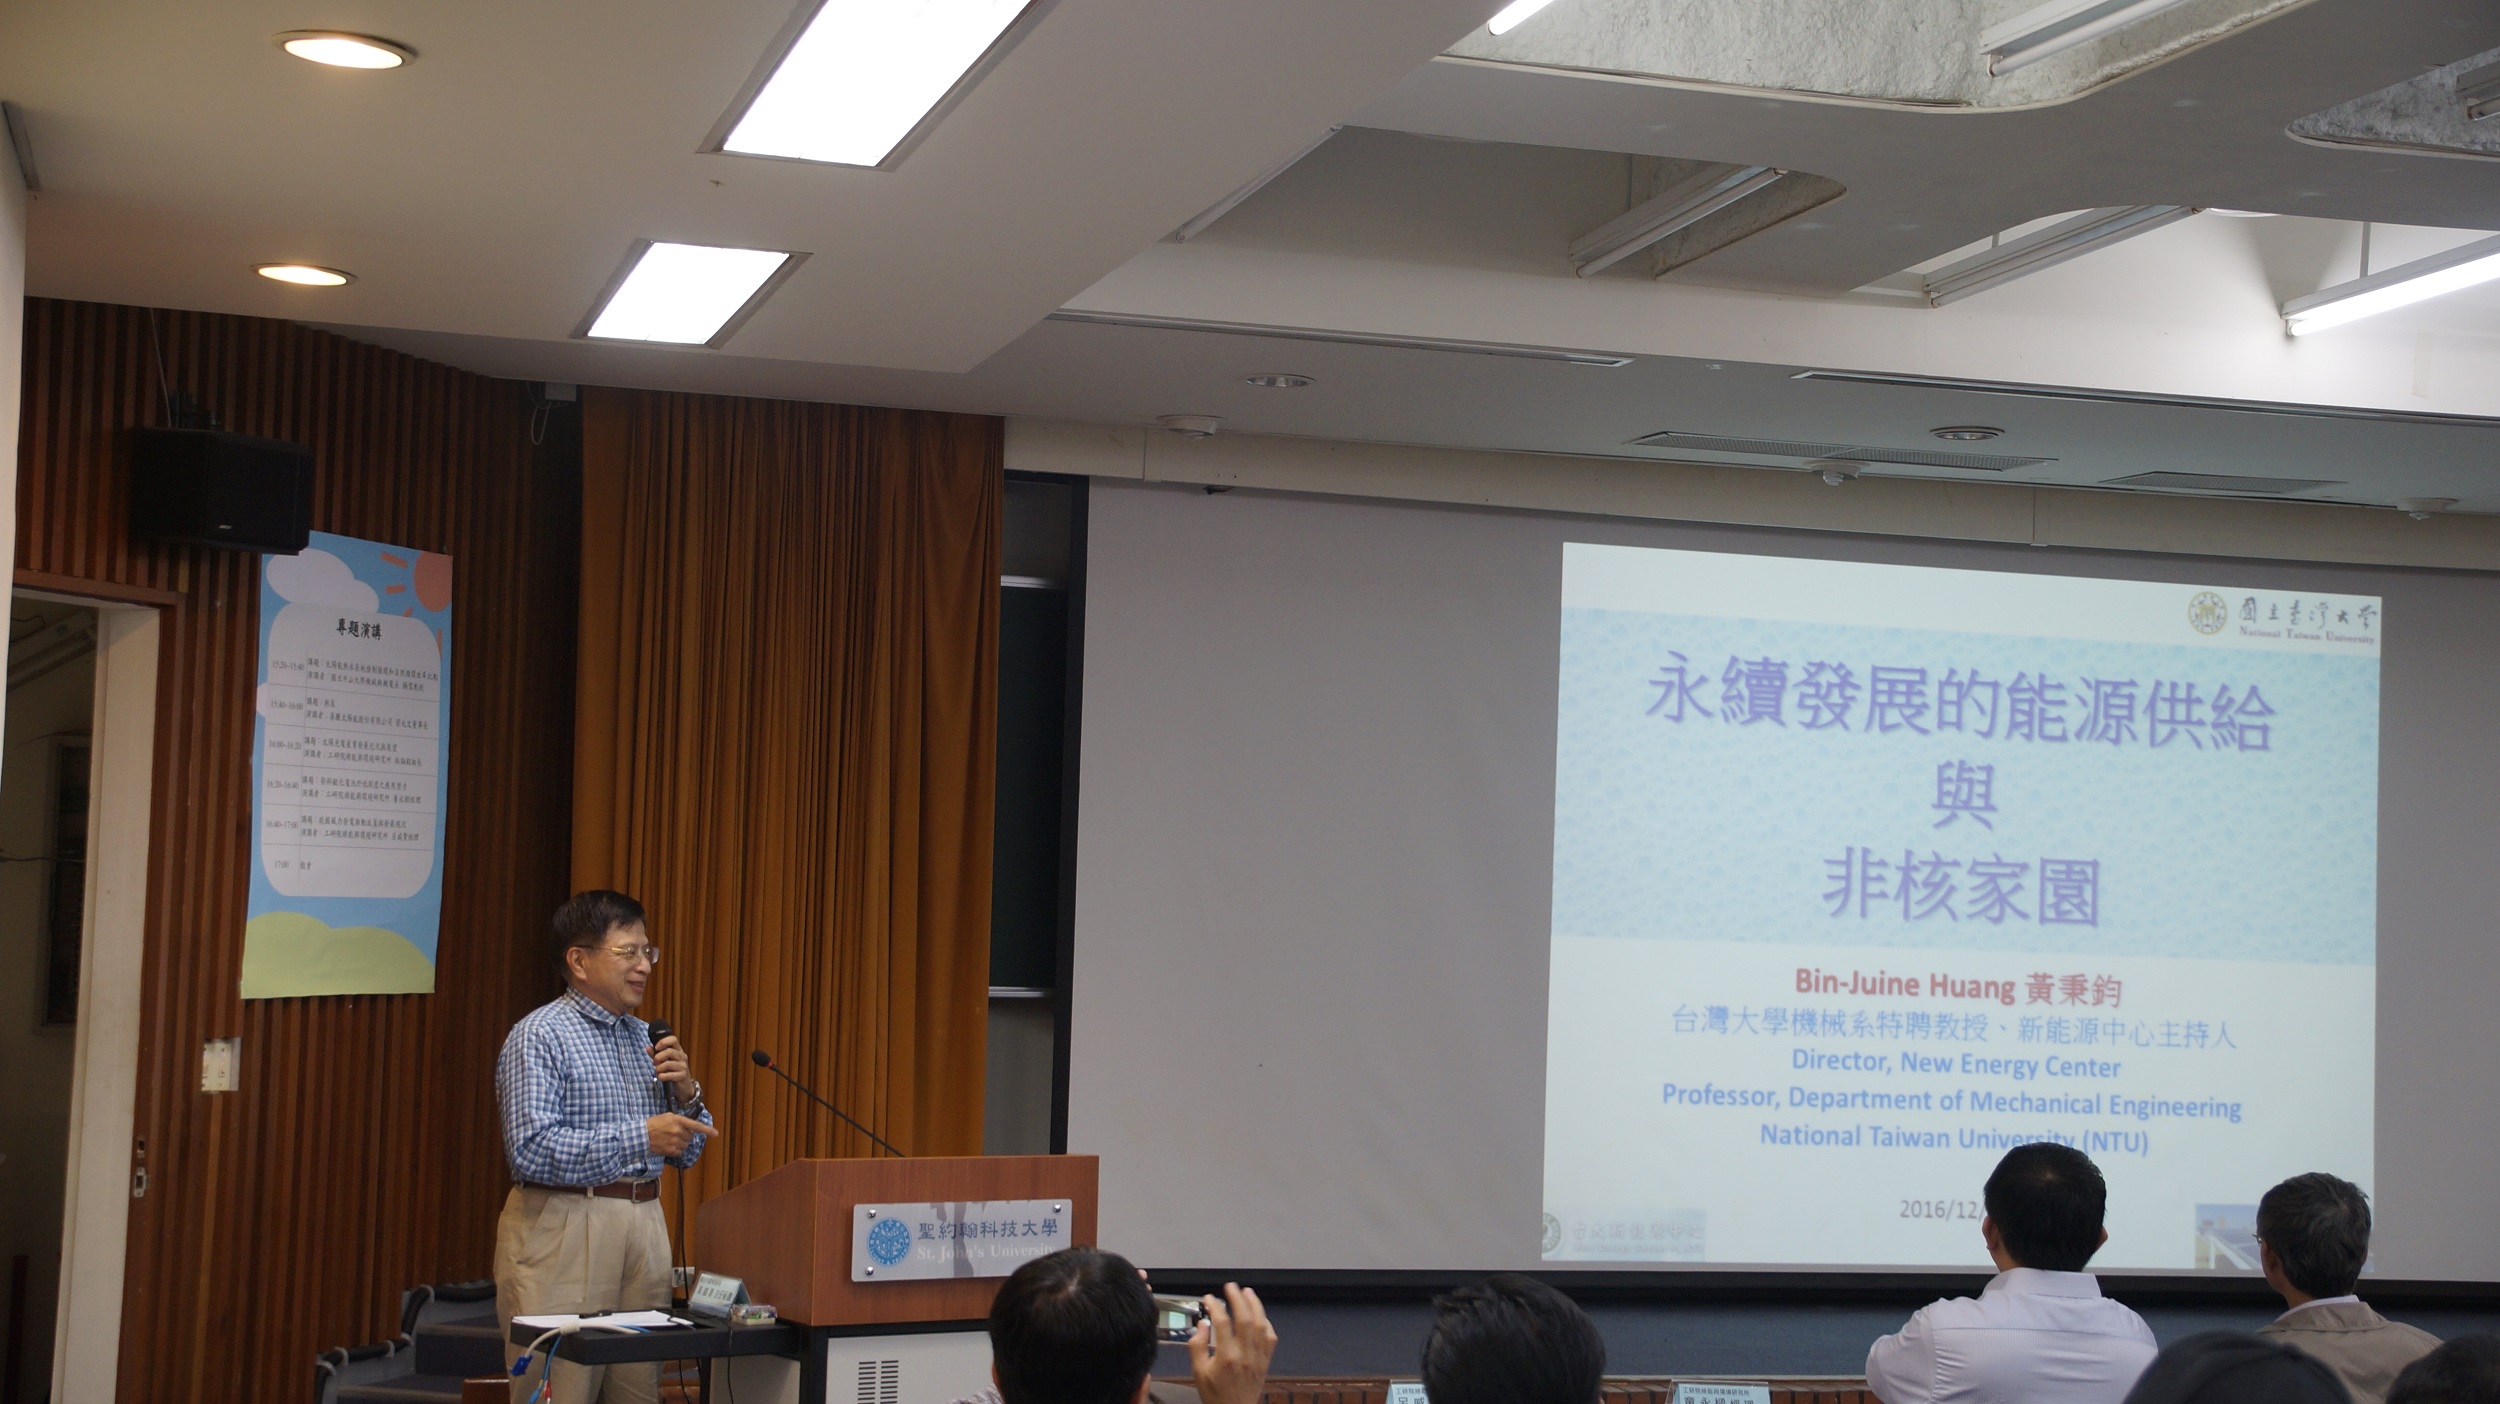 台灣大學機械系黃秉鈞教授以「永續發展的能源供給與非核家園」為題進行演講